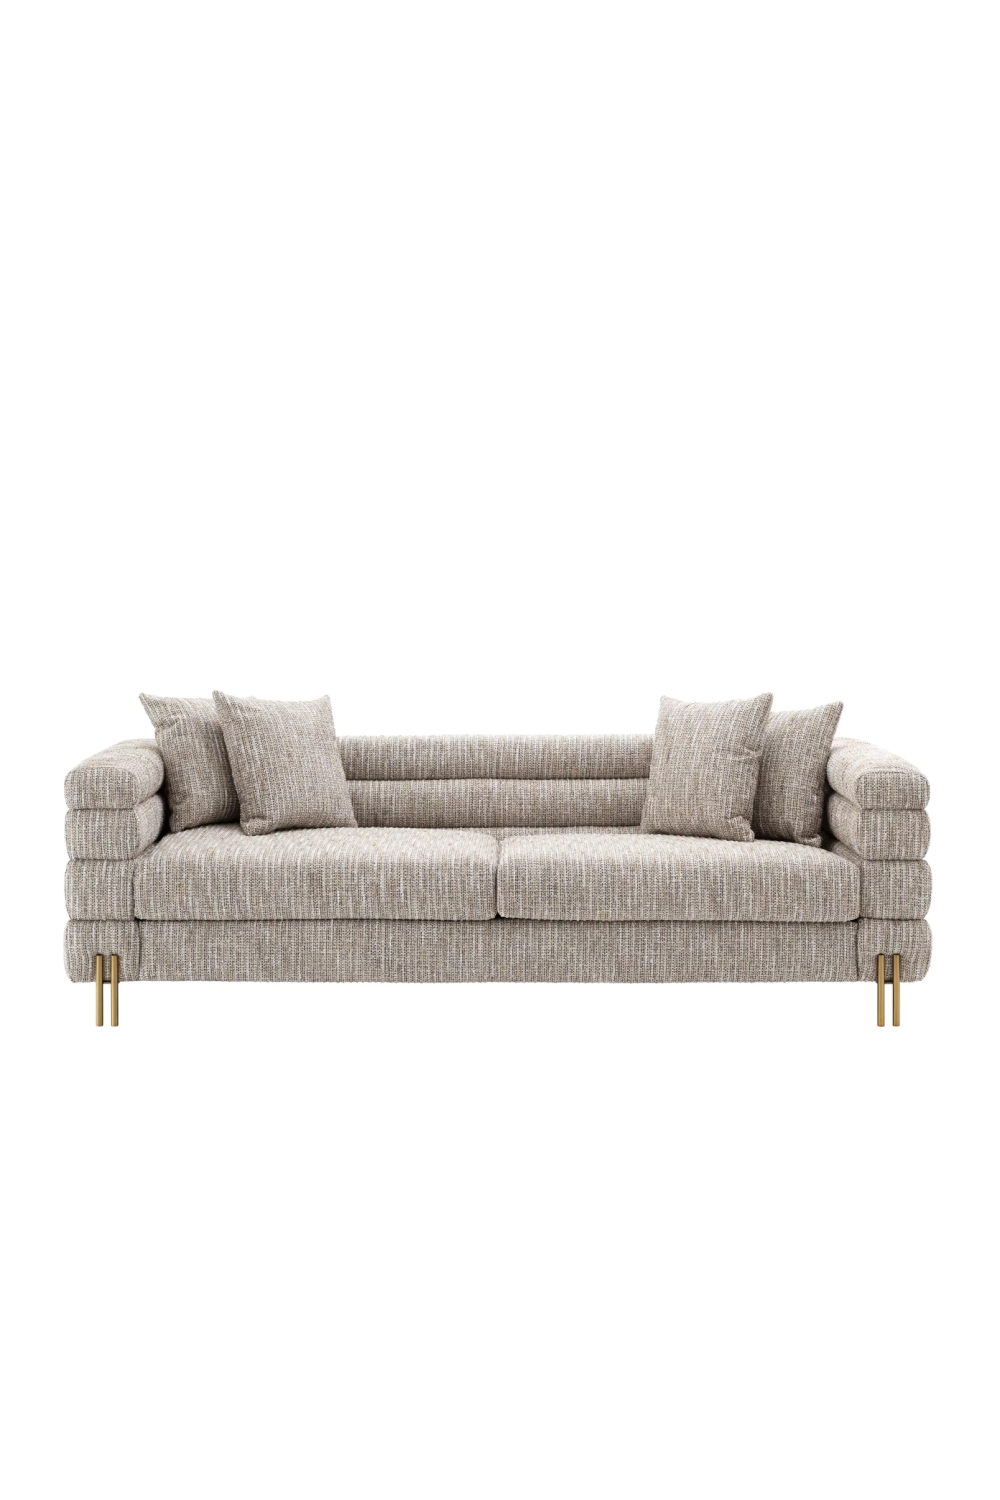 Modern Art Deco Sofa | Eichholtz York | Oroa.com